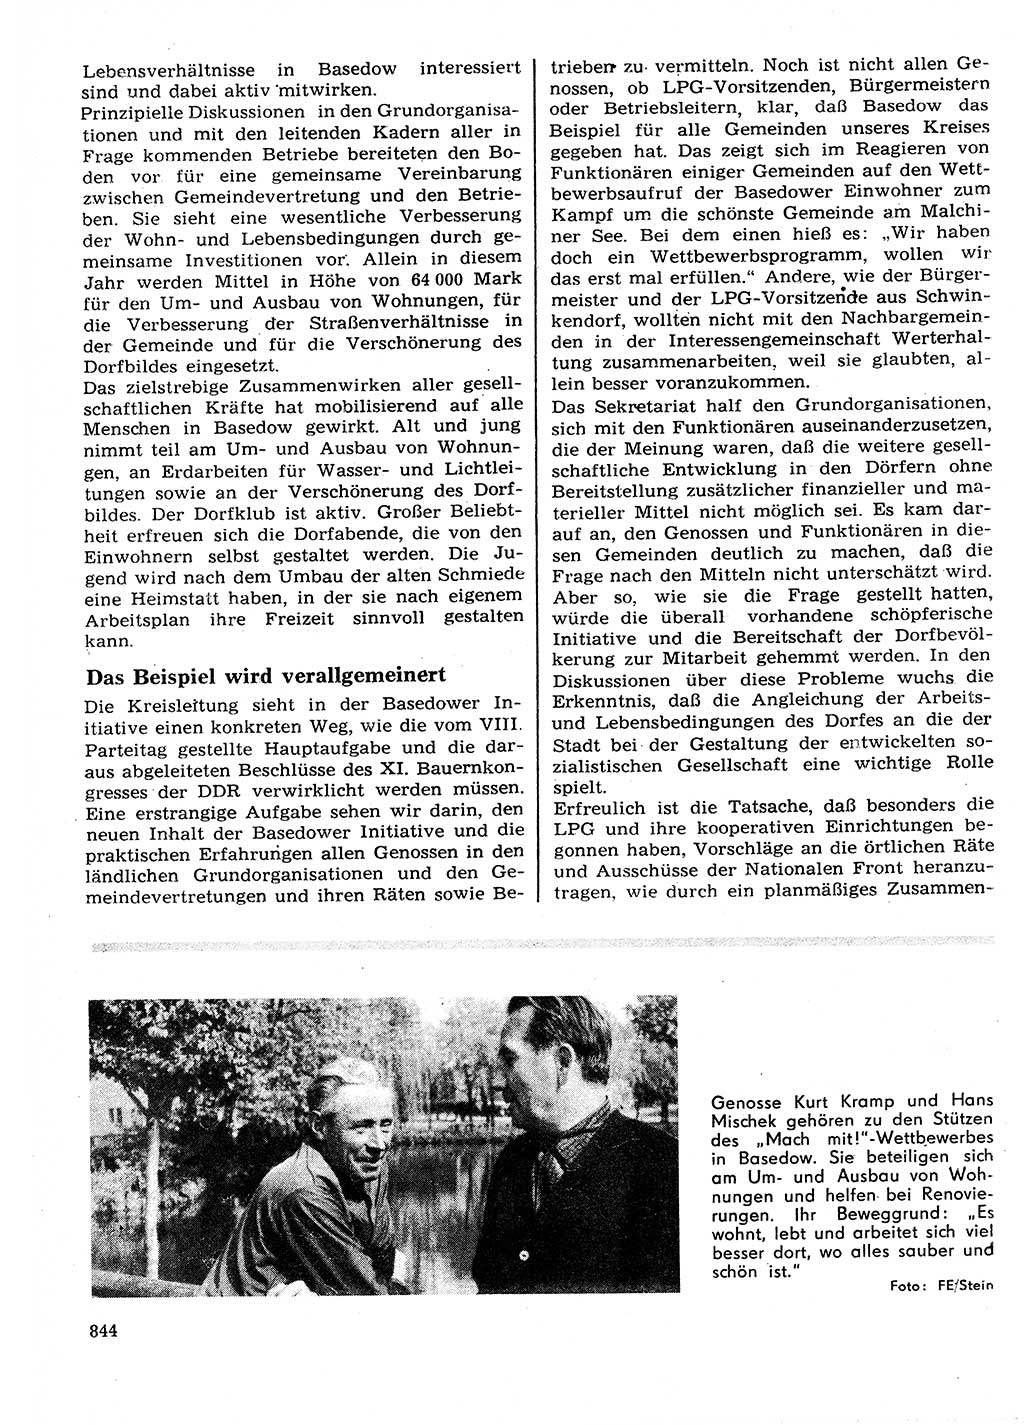 Neuer Weg (NW), Organ des Zentralkomitees (ZK) der SED (Sozialistische Einheitspartei Deutschlands) für Fragen des Parteilebens, 27. Jahrgang [Deutsche Demokratische Republik (DDR)] 1972, Seite 844 (NW ZK SED DDR 1972, S. 844)